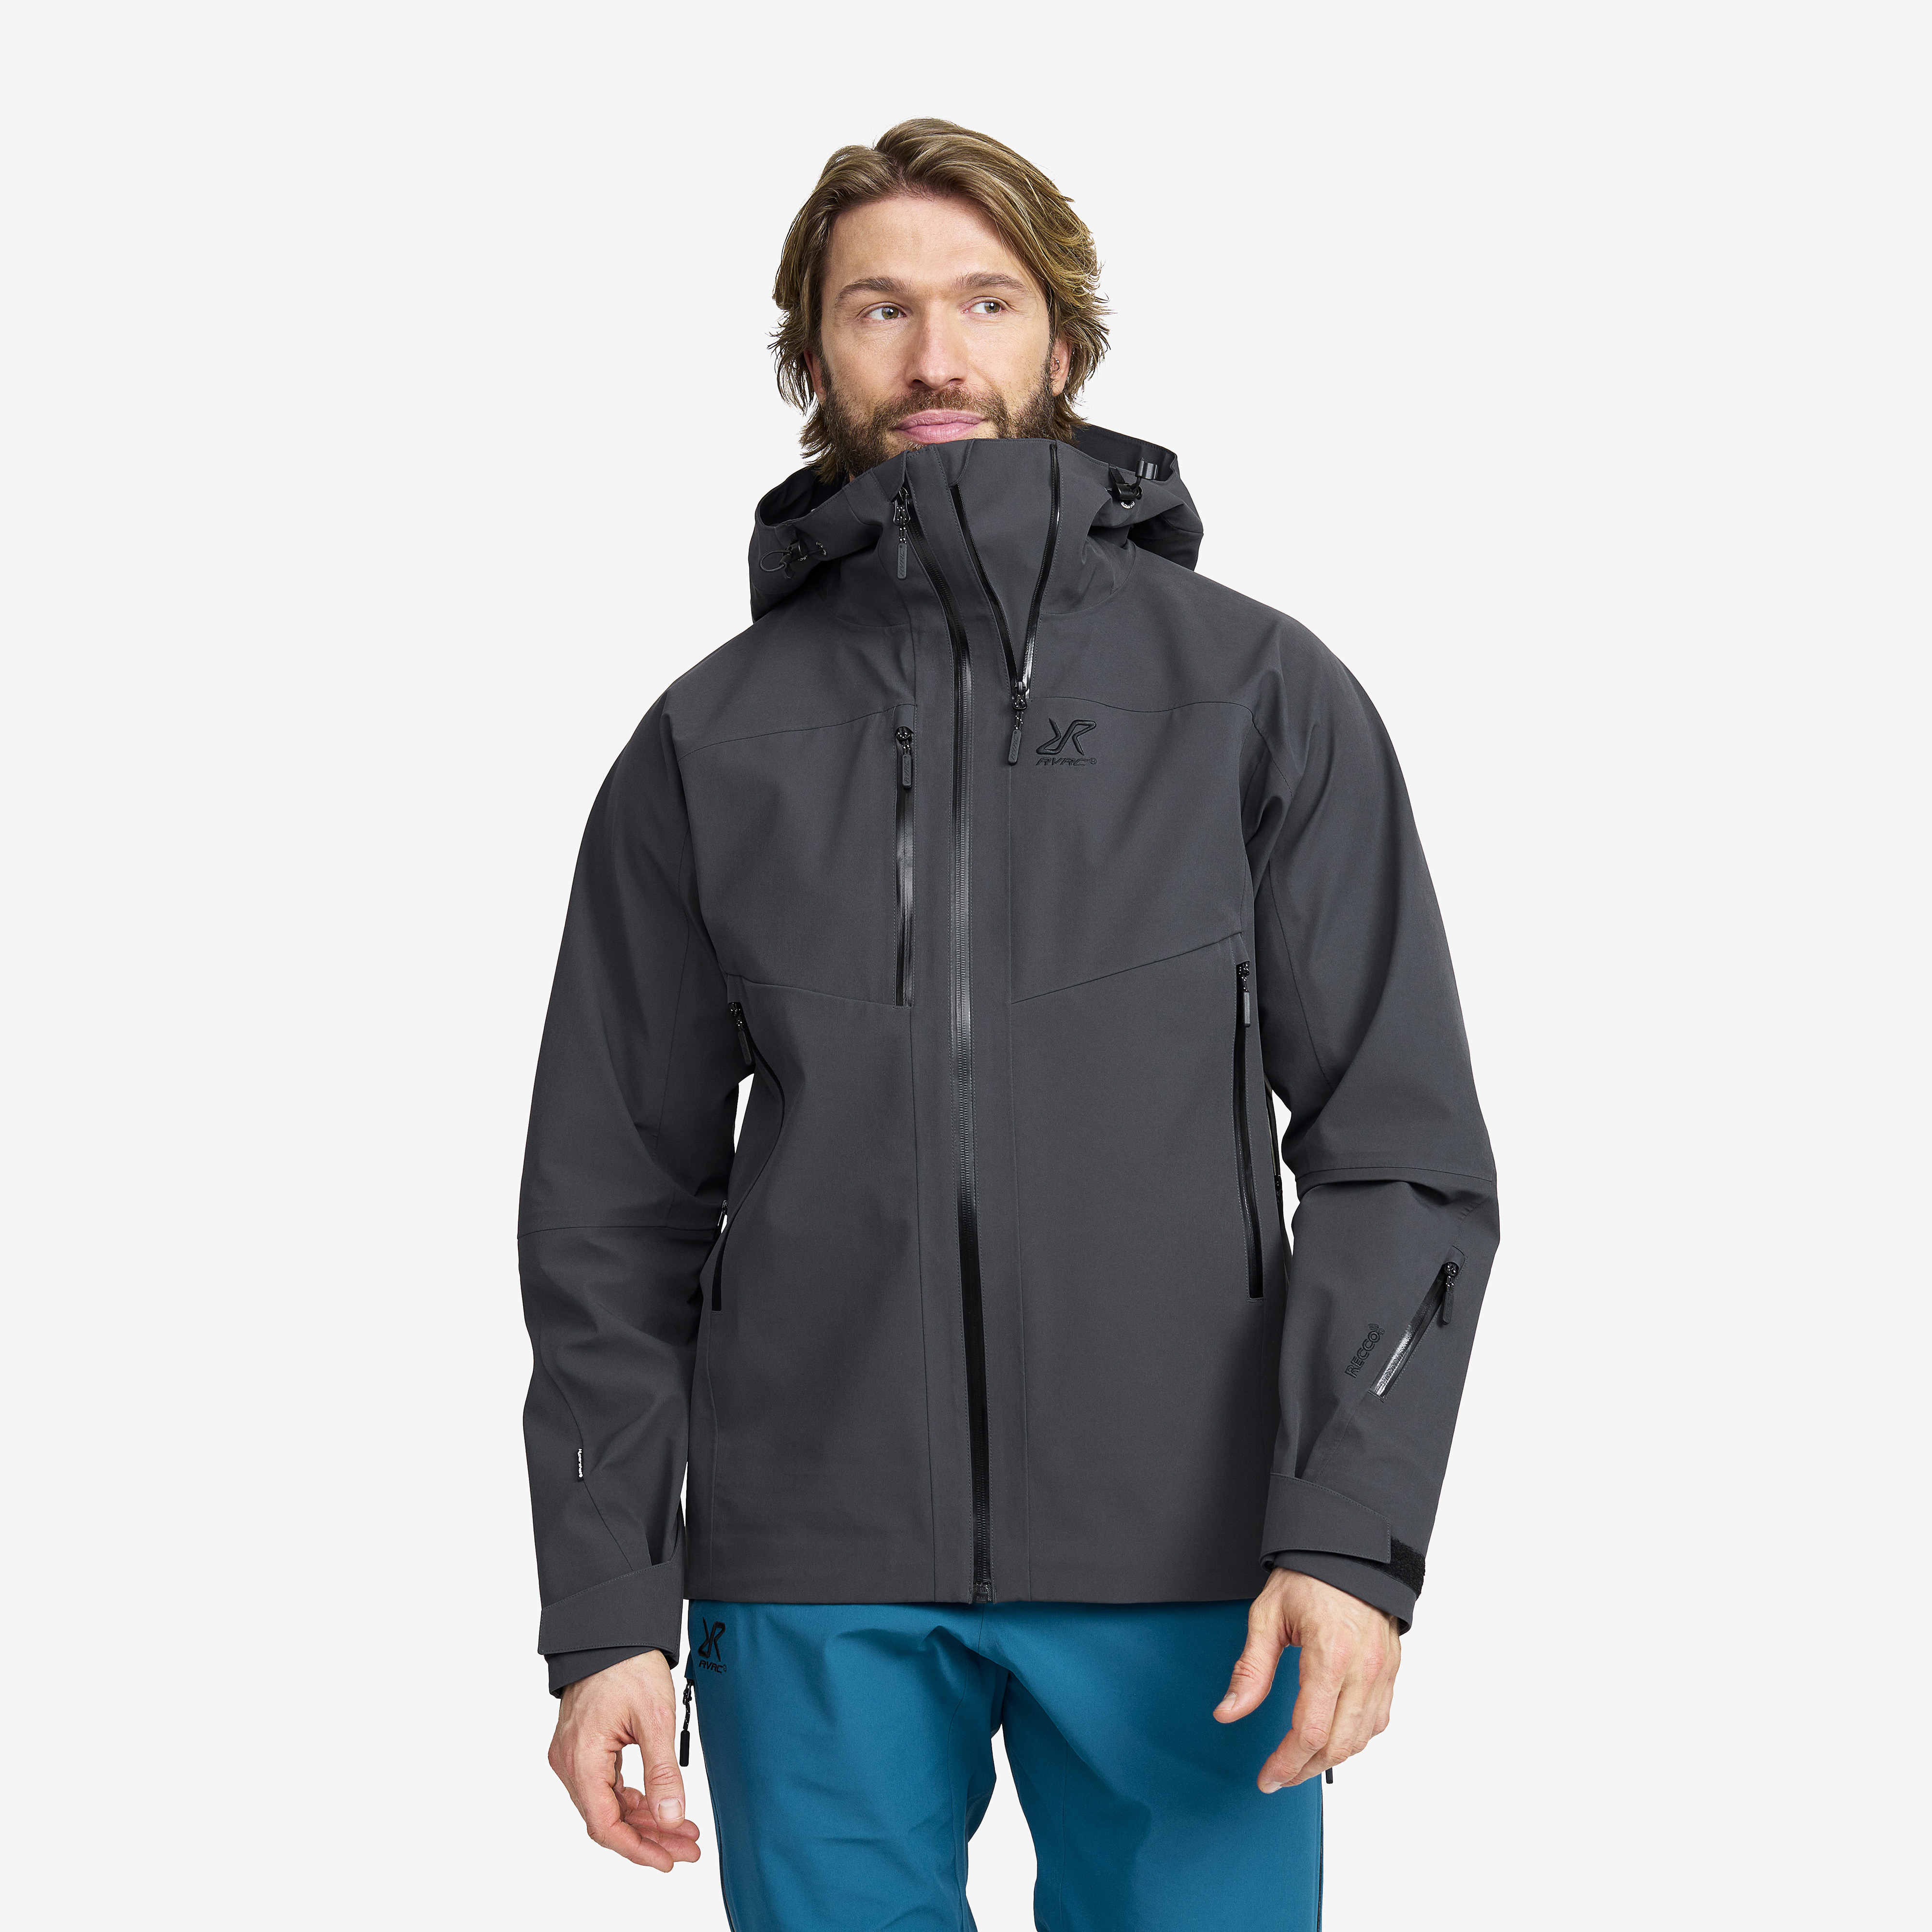 Men’s Outdoor Jackets for all Seasons | RevolutionRace